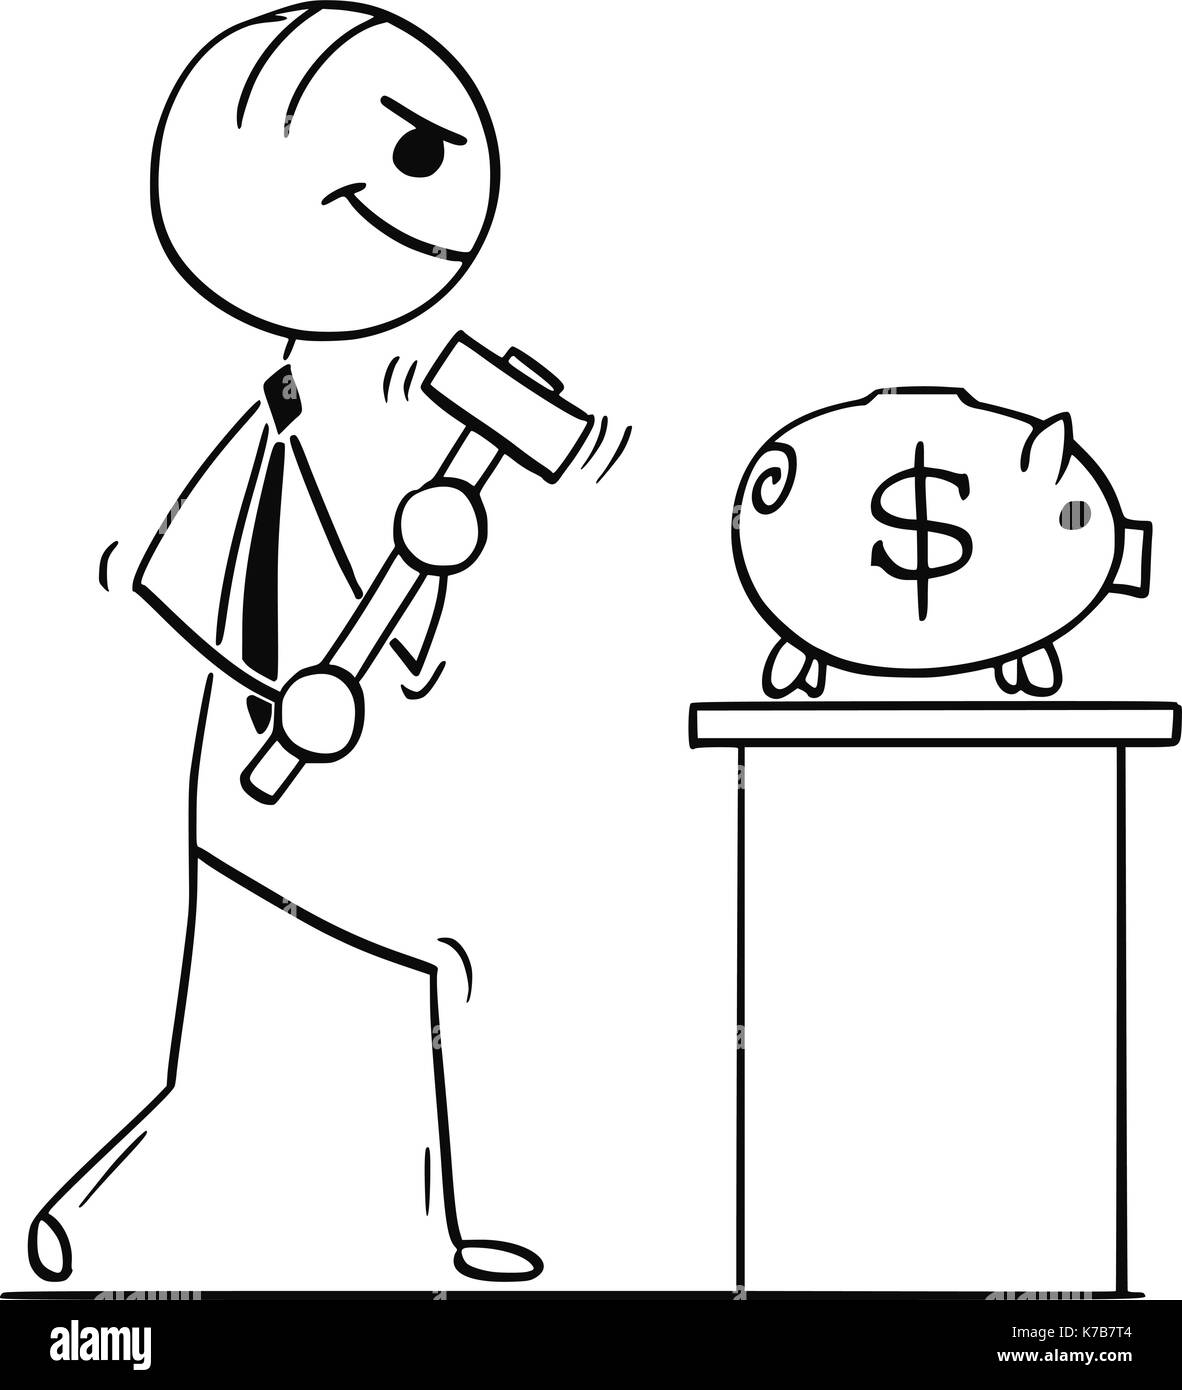 Cartoon stick Mann Abbildung: Lächeln, Geschäftsmann oder Politiker gehen mit Hammer das Sparschwein mit Dollarzeichen zu brechen. Stock Vektor